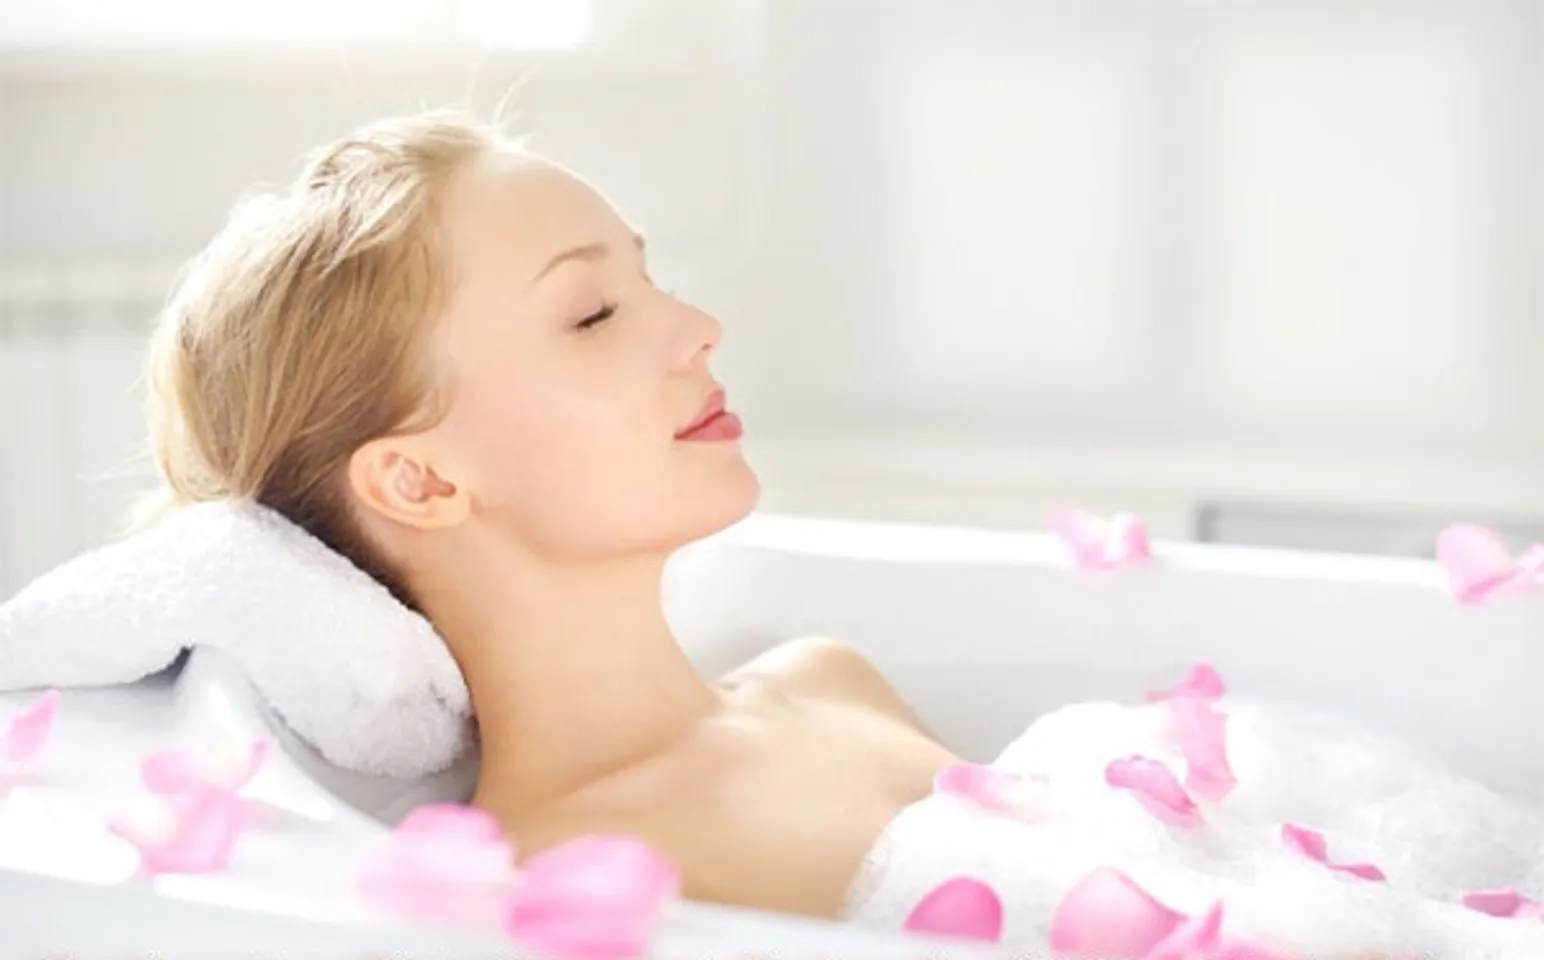 Sử dụng sữa tắm Shiseido mang đến trải nghiệm như ngâm mình trong bồn tắm cùng những cánh hoa hồng mềm mại, tươi mát và ngát hương